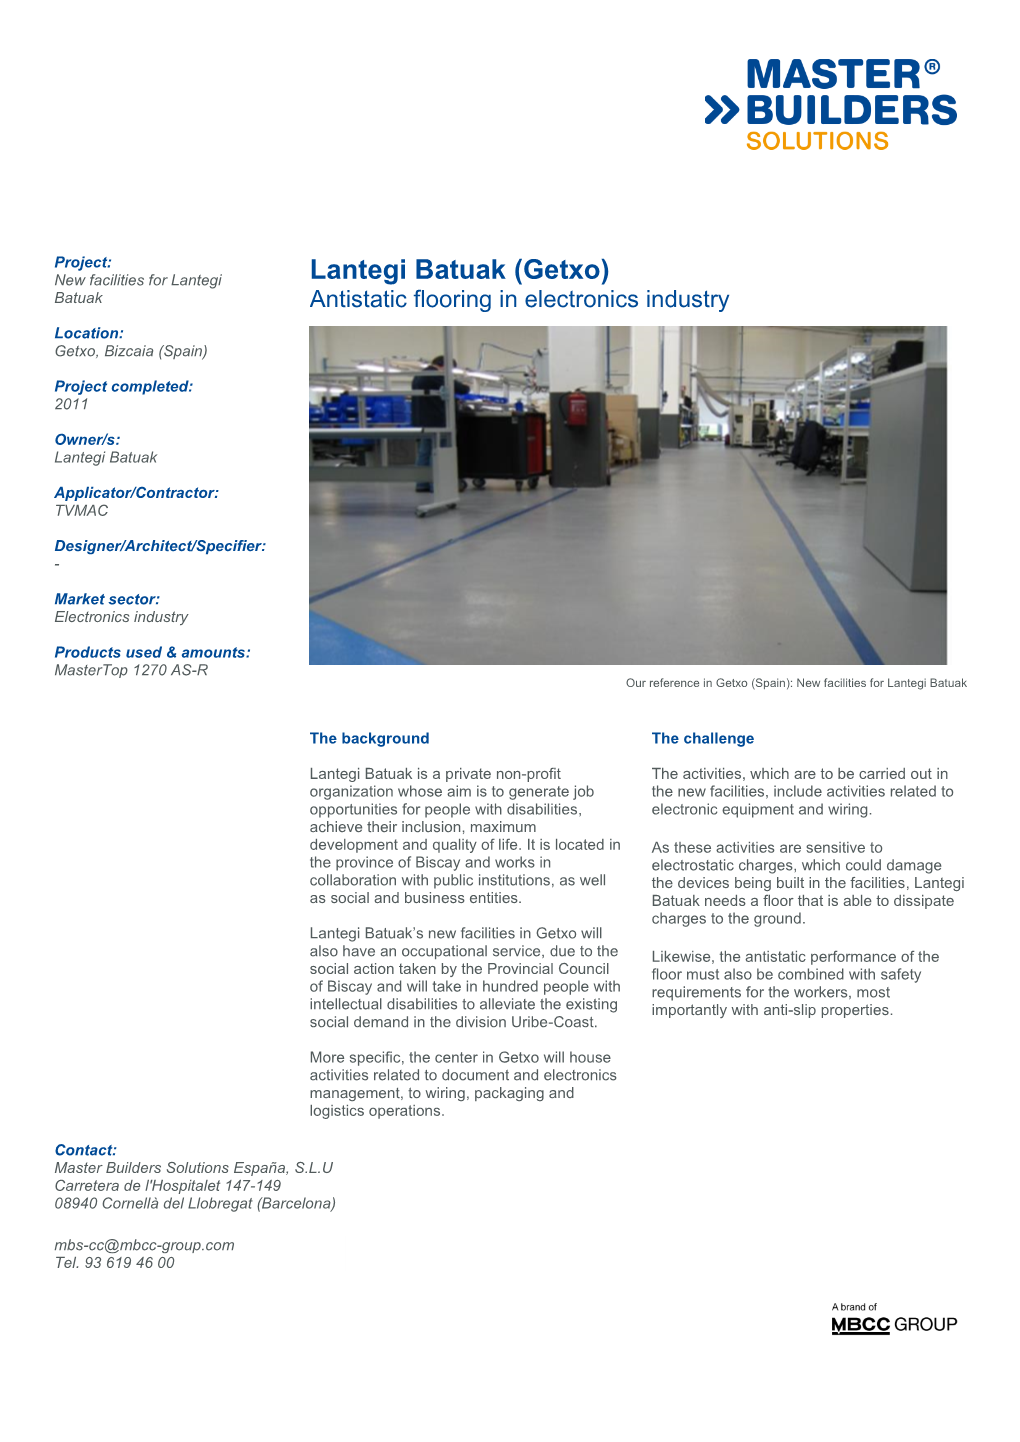 Lantegi Batuak (Getxo) Batuak Antistatic Flooring in Electronics Industry